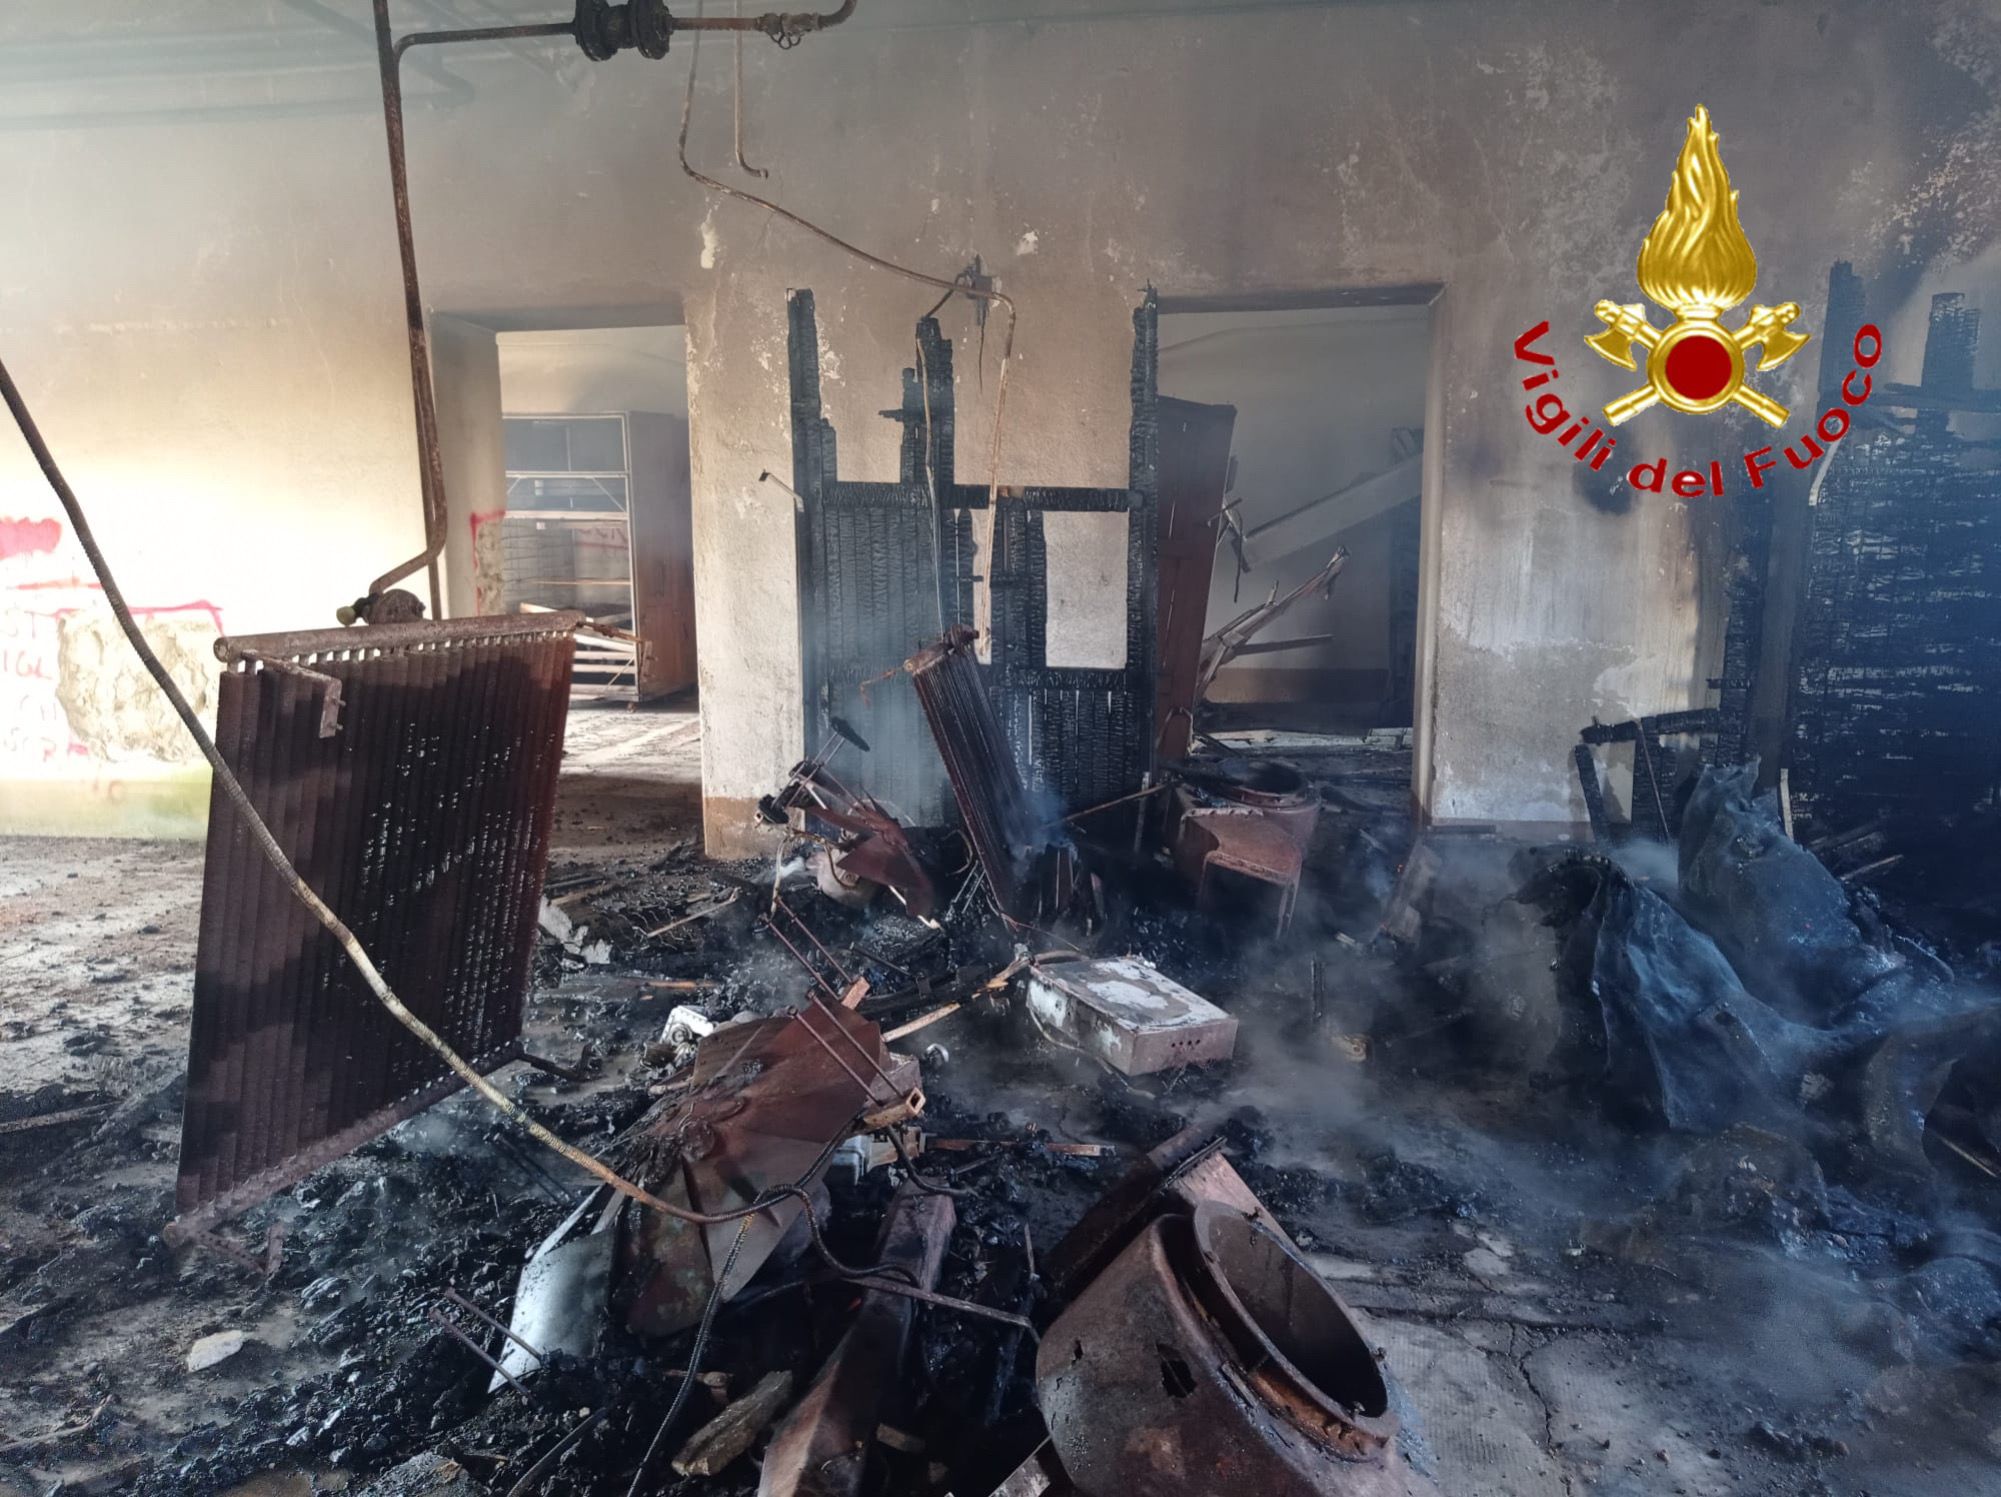 Incendio all’ex Mulino Gallisai. Il sindaco Soddu: ” Grave danno della nostra memoria storica”